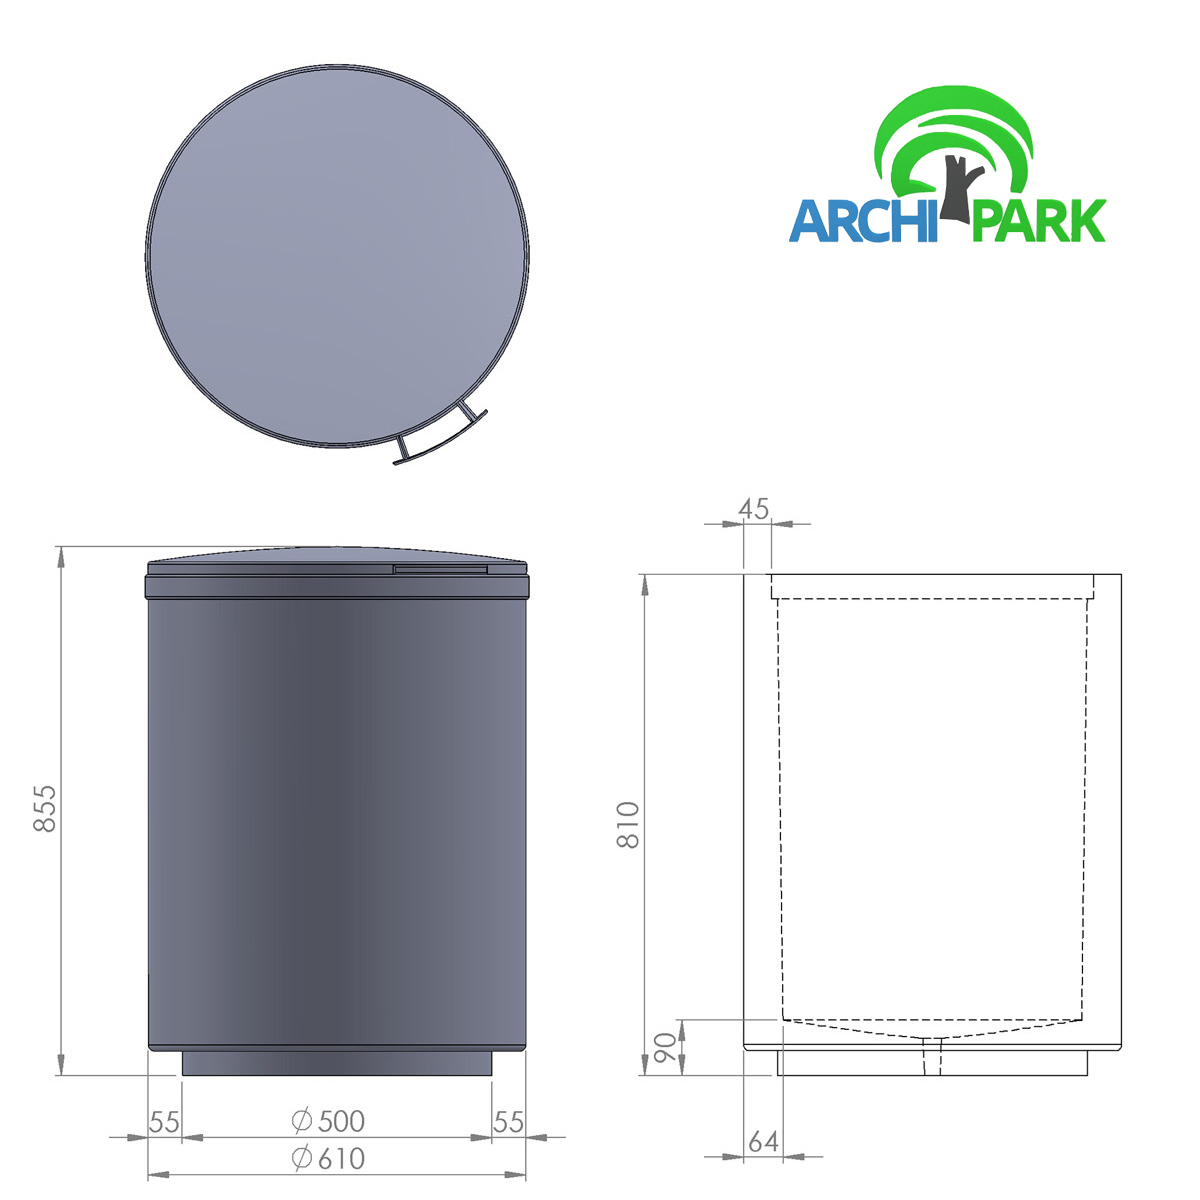 Technische Zeichnung - Abfallbehälter aus Beton mit deckel id. 1011